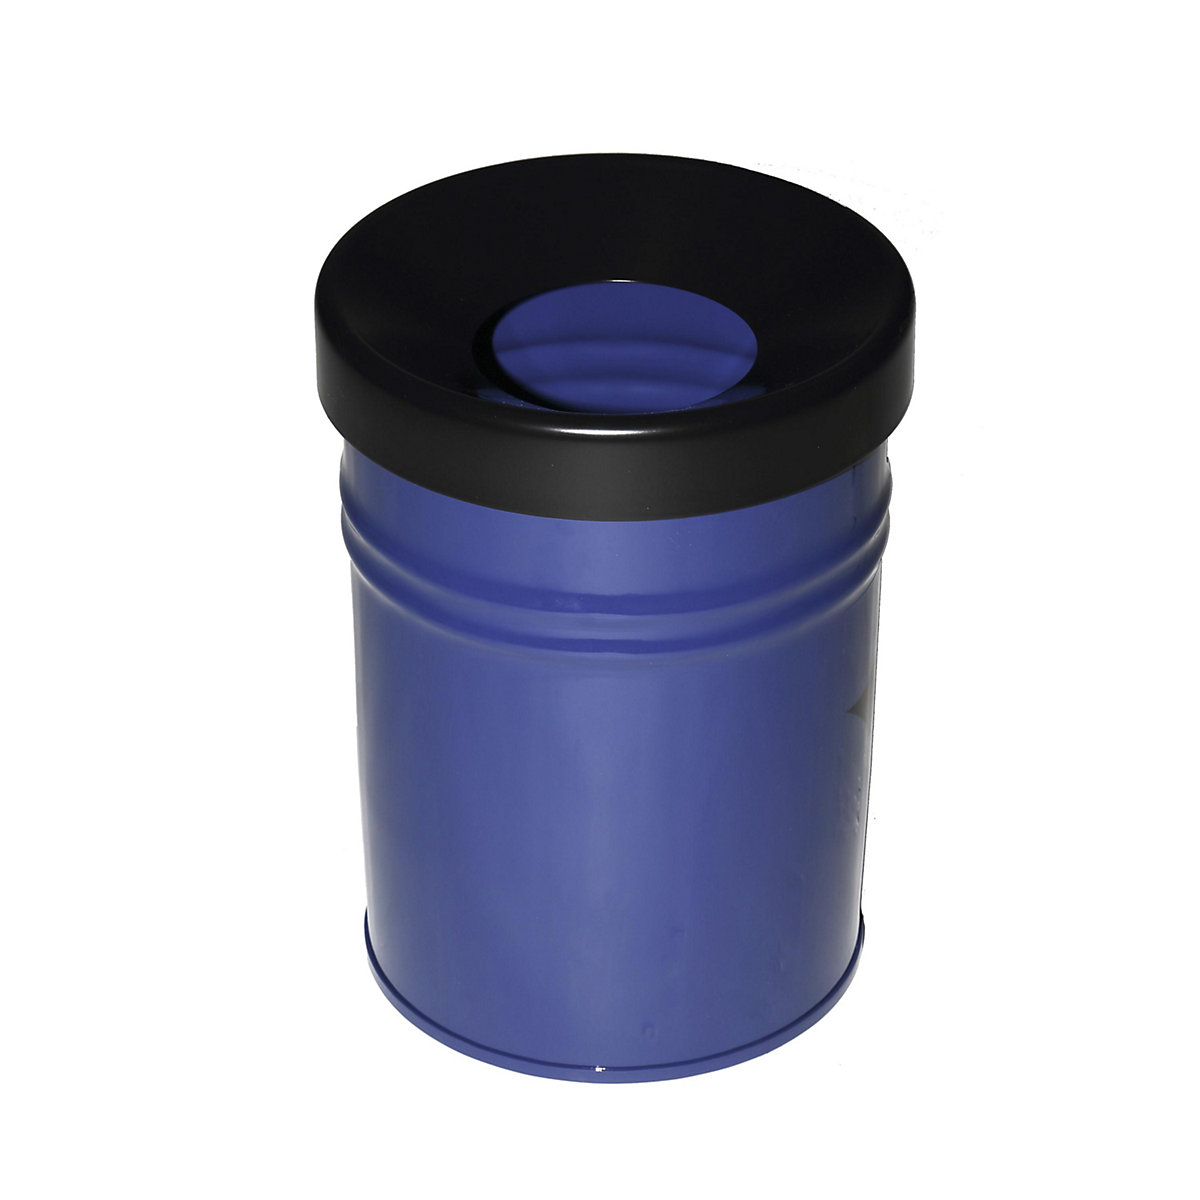 Abfallbehälter, selbstlöschend, Volumen 16 l, HxØ 340 x 245 mm, blau